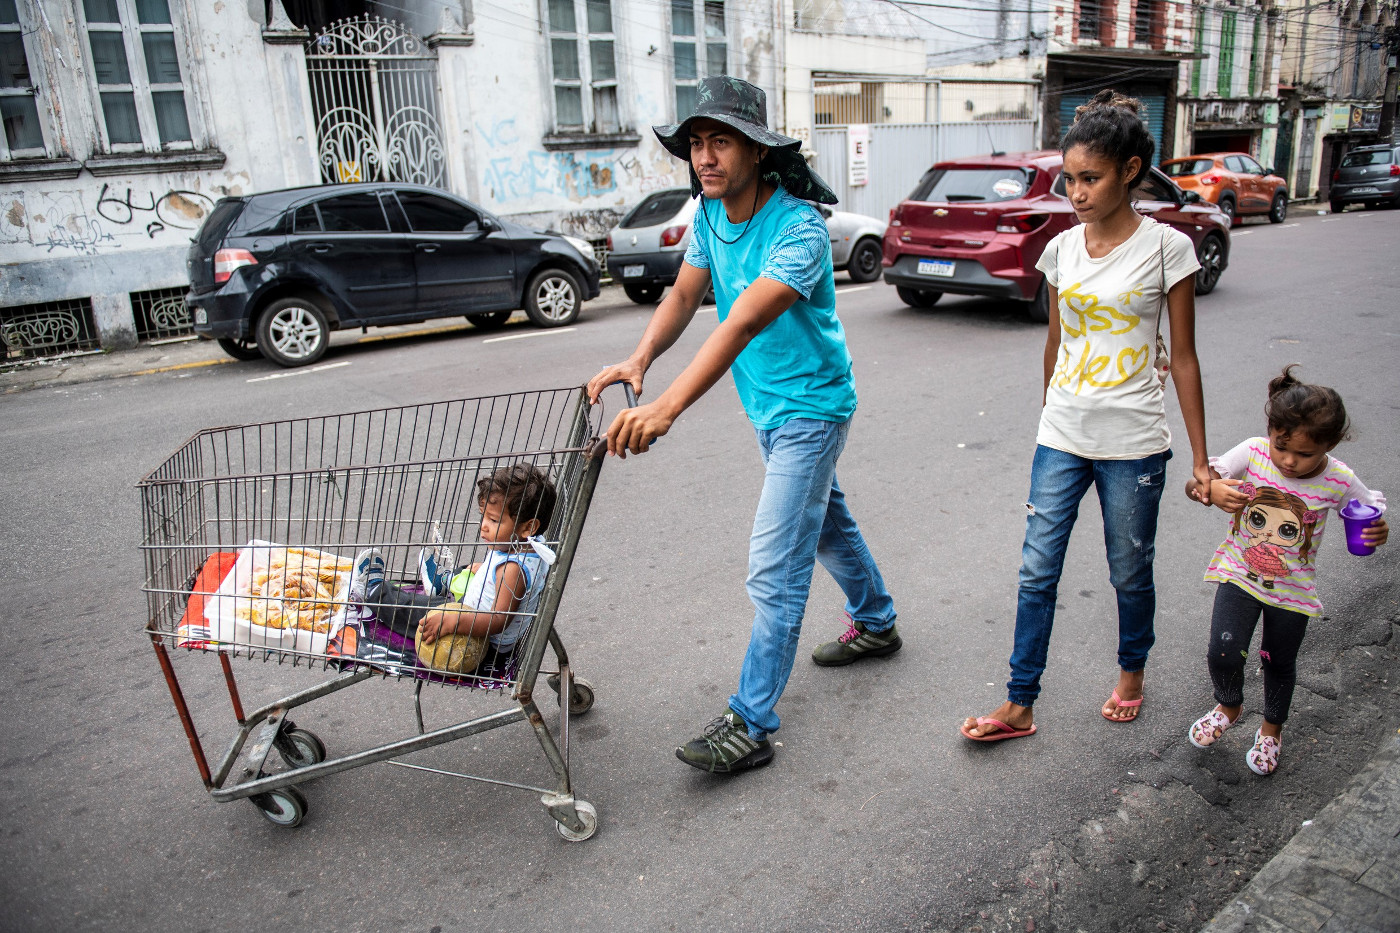 Jesus Parra (28) und Rosmary Gallardo (22) sind mit ihren beiden Kindern aus Venezuela geflohen und suchen in Manaus, Brasilien, nach neuen Perspektiven. Sie verkaufen auf der Straße getrocknete Früchte und Kaffee. Hilfe erhalten Sie über die von Adveniat unterstützte Migrantenpastoral der Scalabrinianer-Schwestern. Foto: Adveniat/Florian Kopp